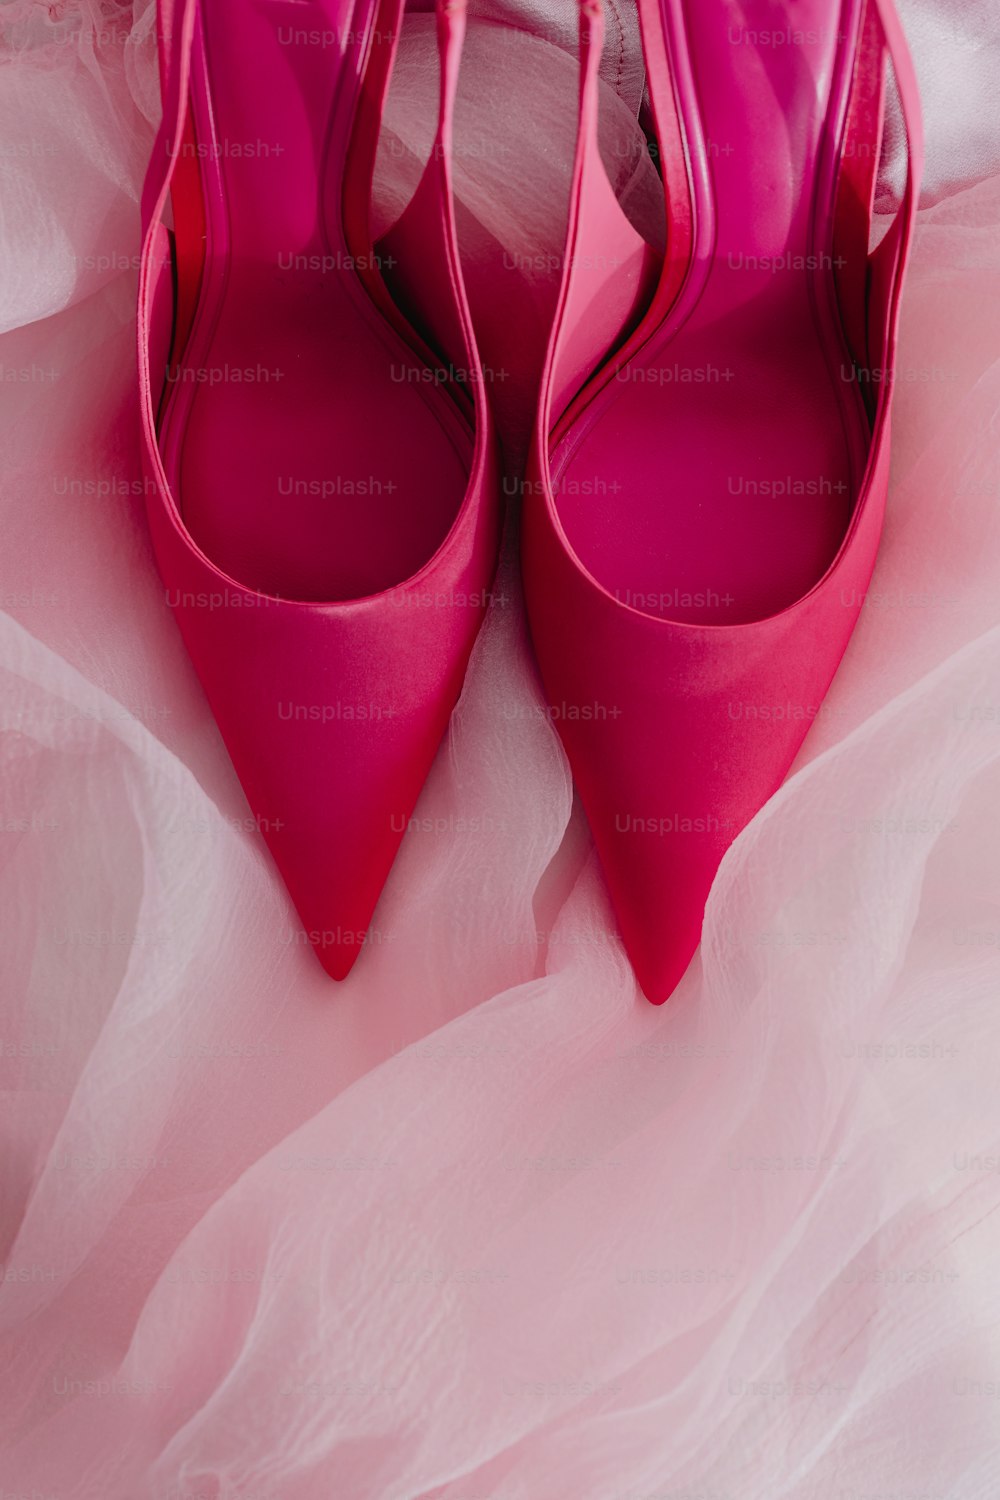 Ein Paar rosa Schuhe sitzt auf einem Bett